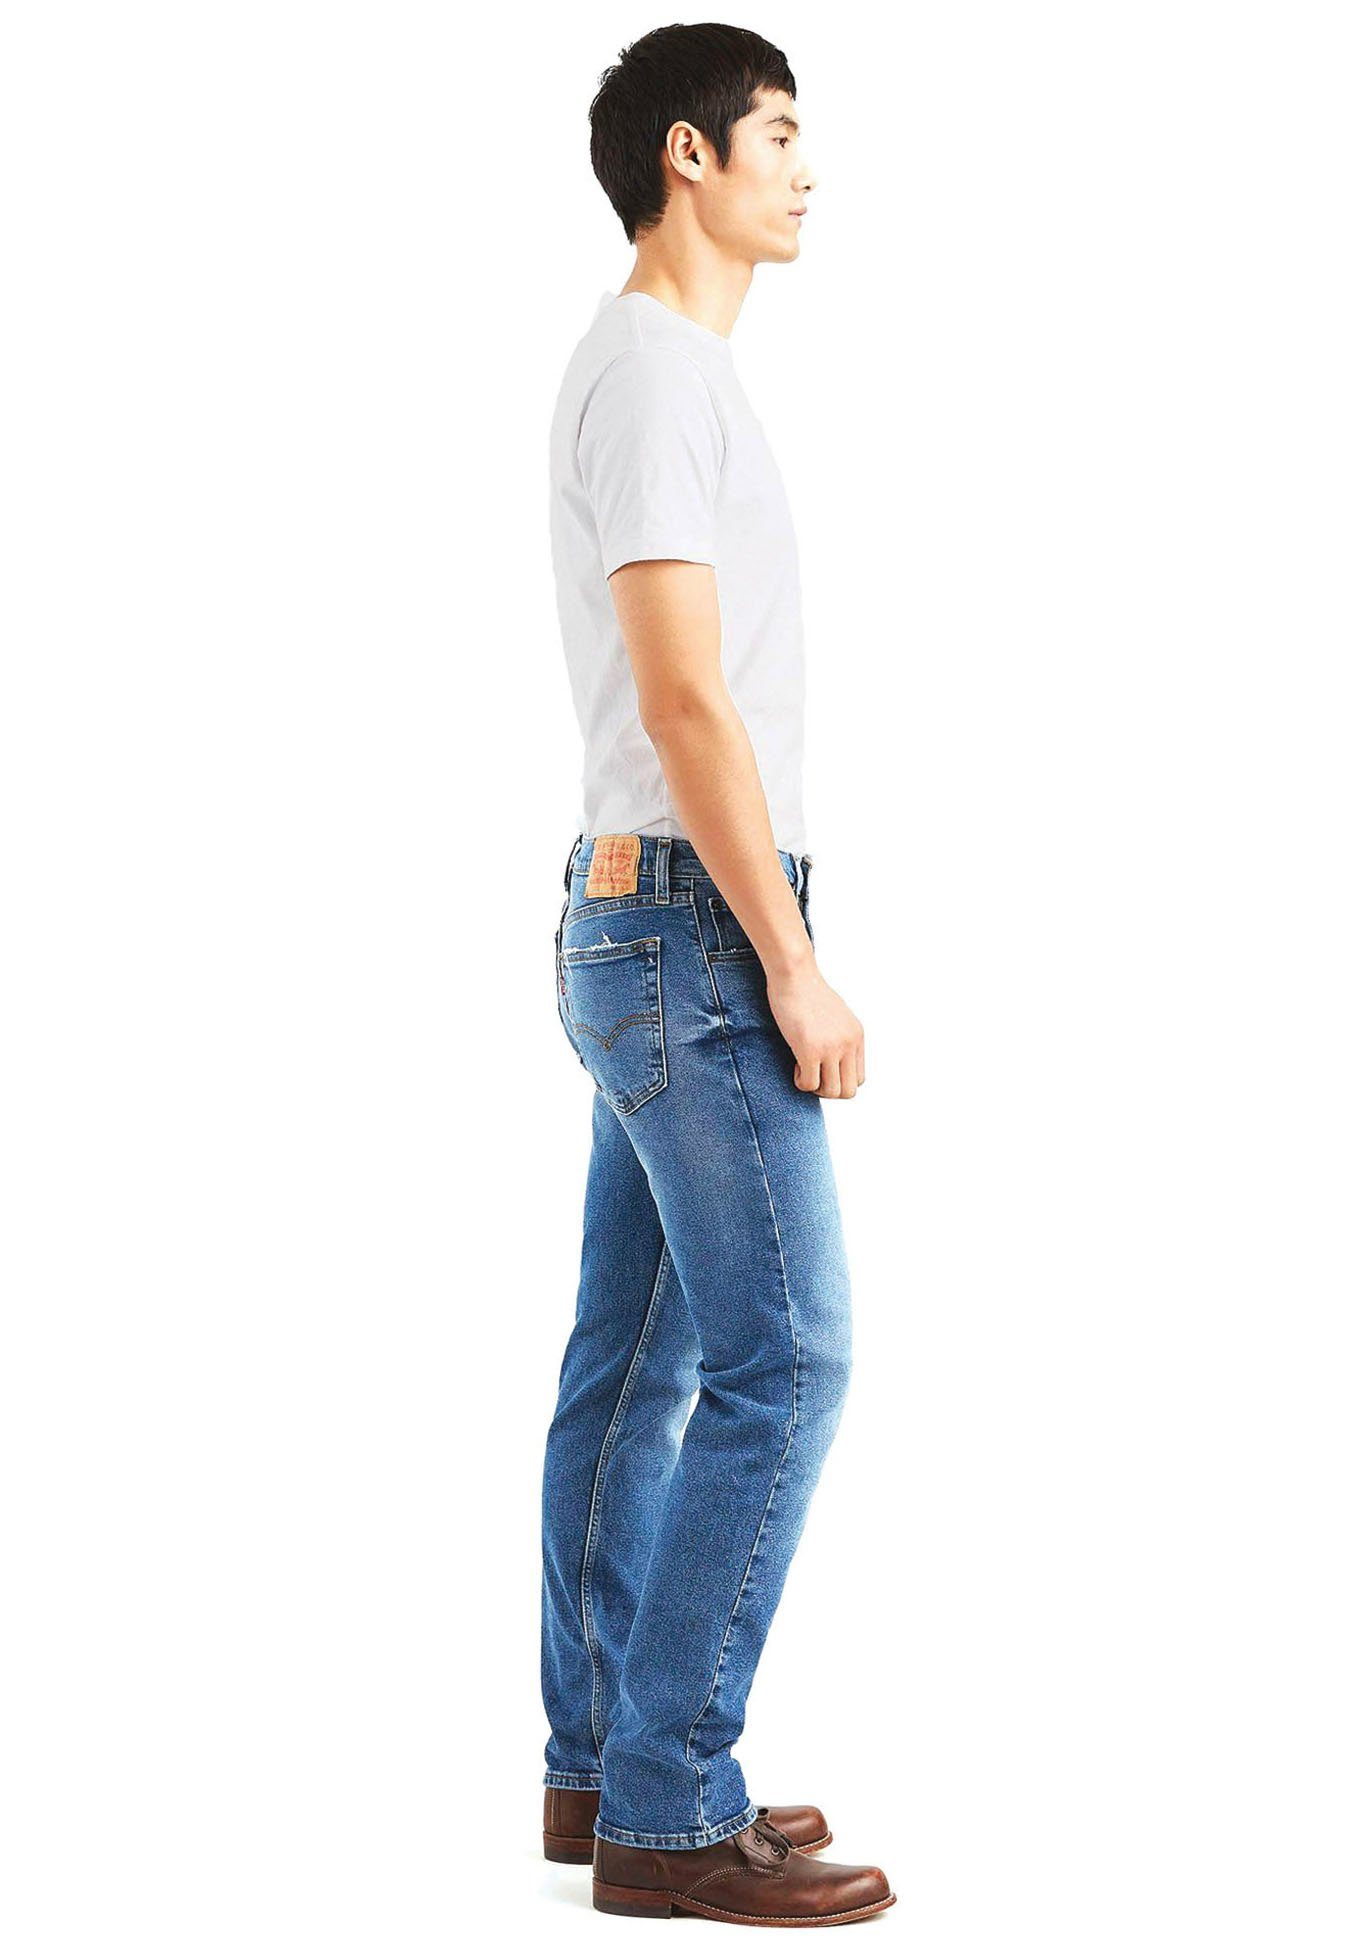 Straight-Jeans MUSIC REGULAR THE Levi's® 505 FEEL